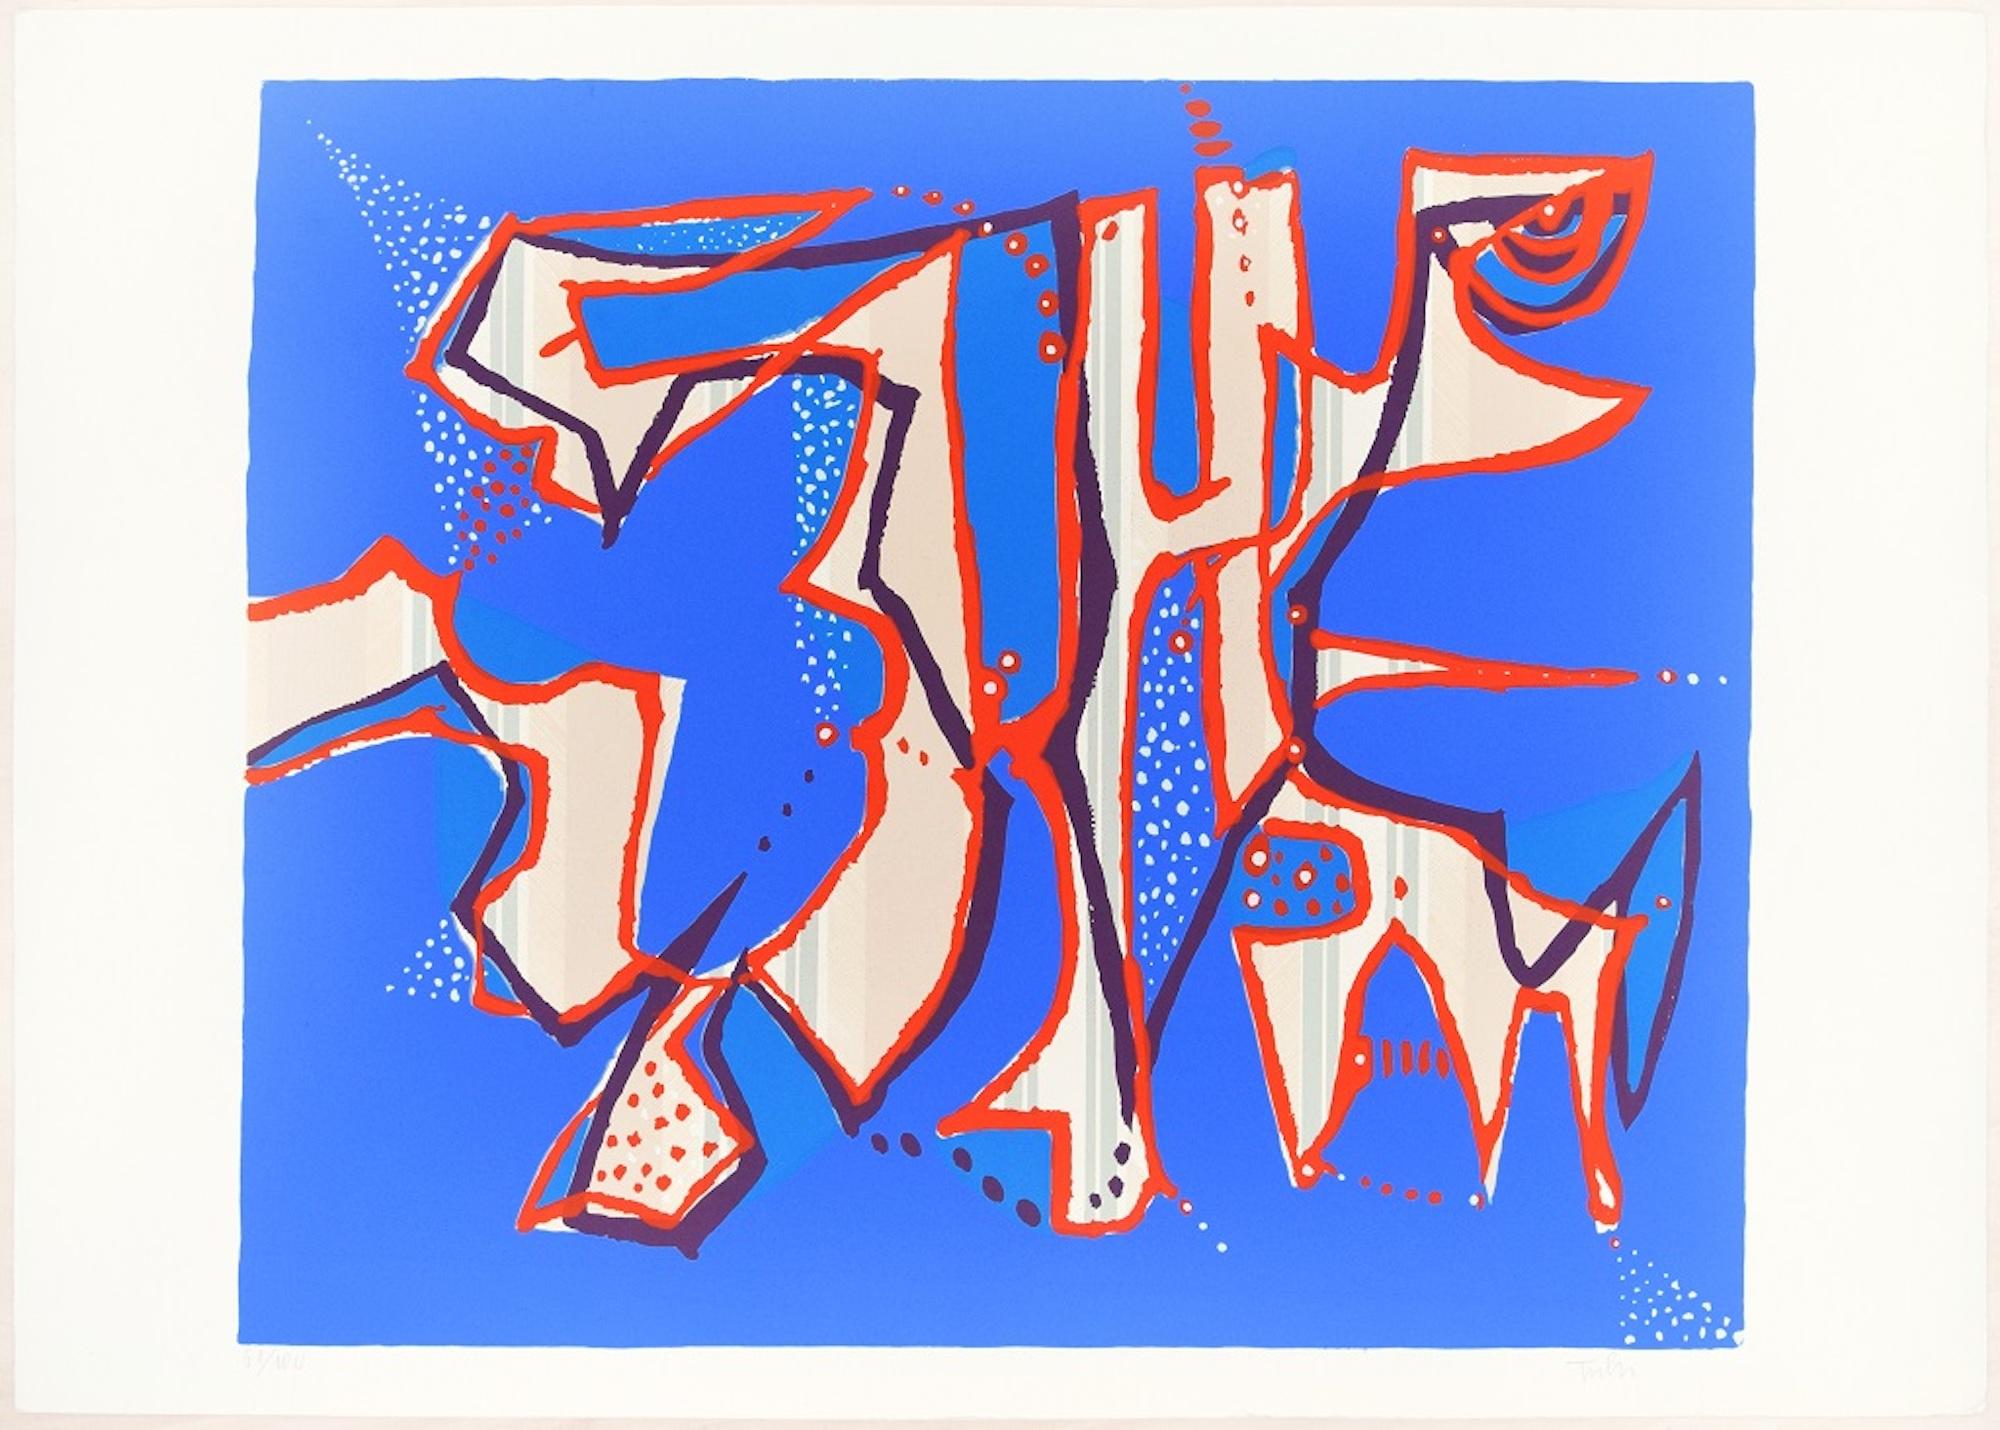 Sans titre est une sérigraphie colorée sur papier, réalisée dans les années soixante-dix du XXe siècle par l'artiste italien Wladimiro Tulli, publiée par La Nuova Foglio, une maison d'édition de Macerata comme le signale le timbre sec dans la marge